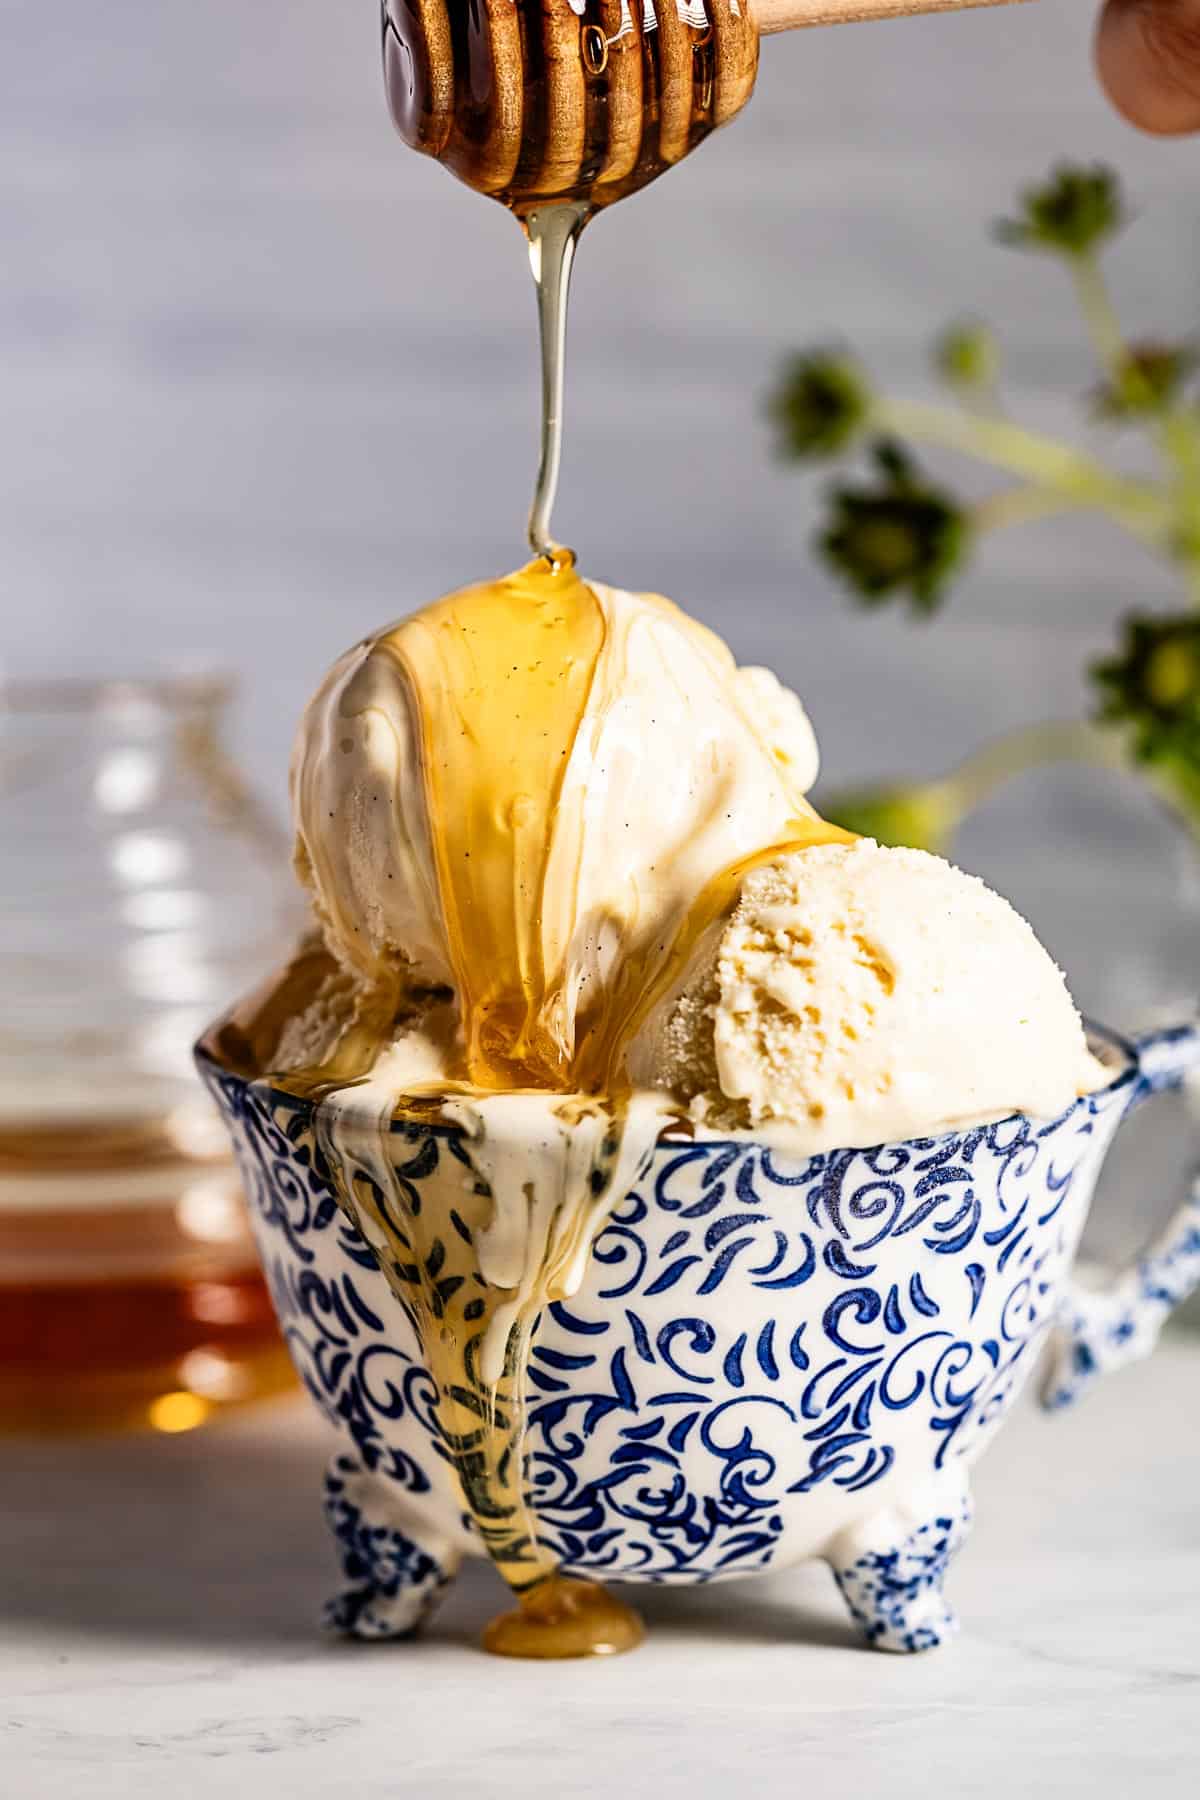 https://foolproofliving.com/wp-content/uploads/2013/09/Honey-Ice-Cream.jpg